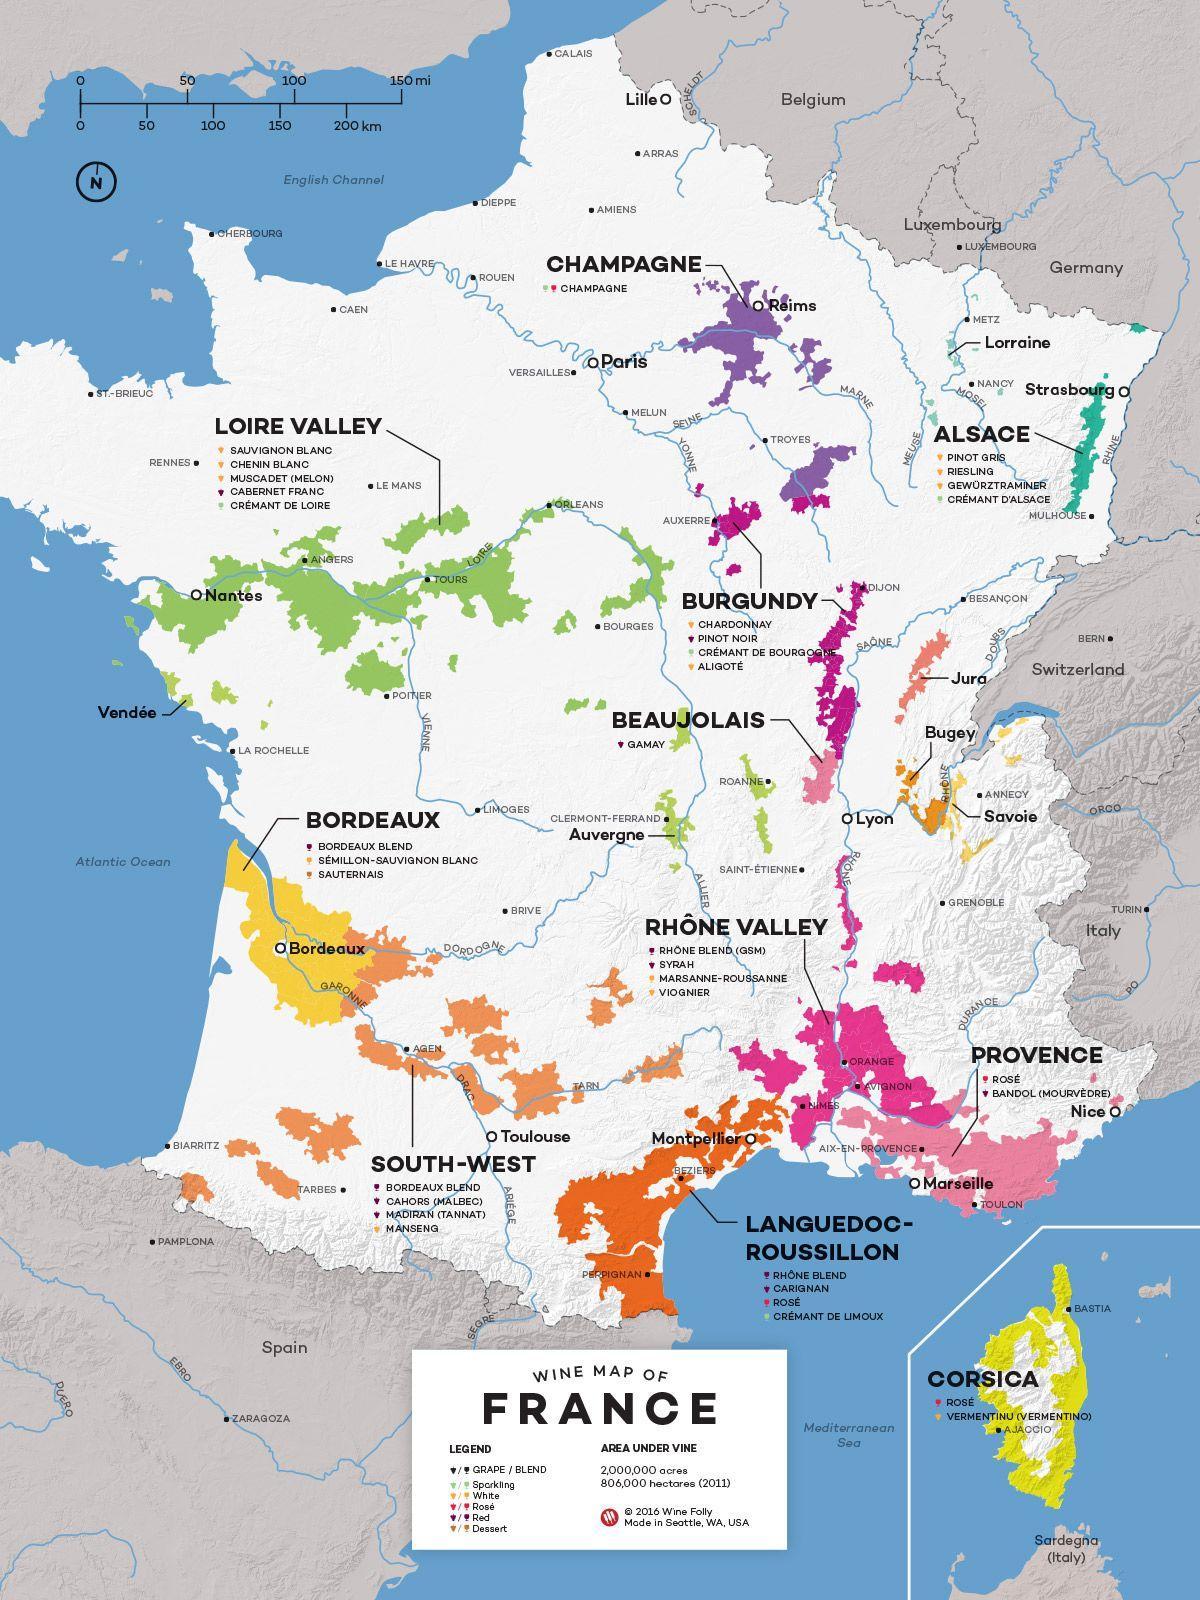 法国葡萄酒之乡地图